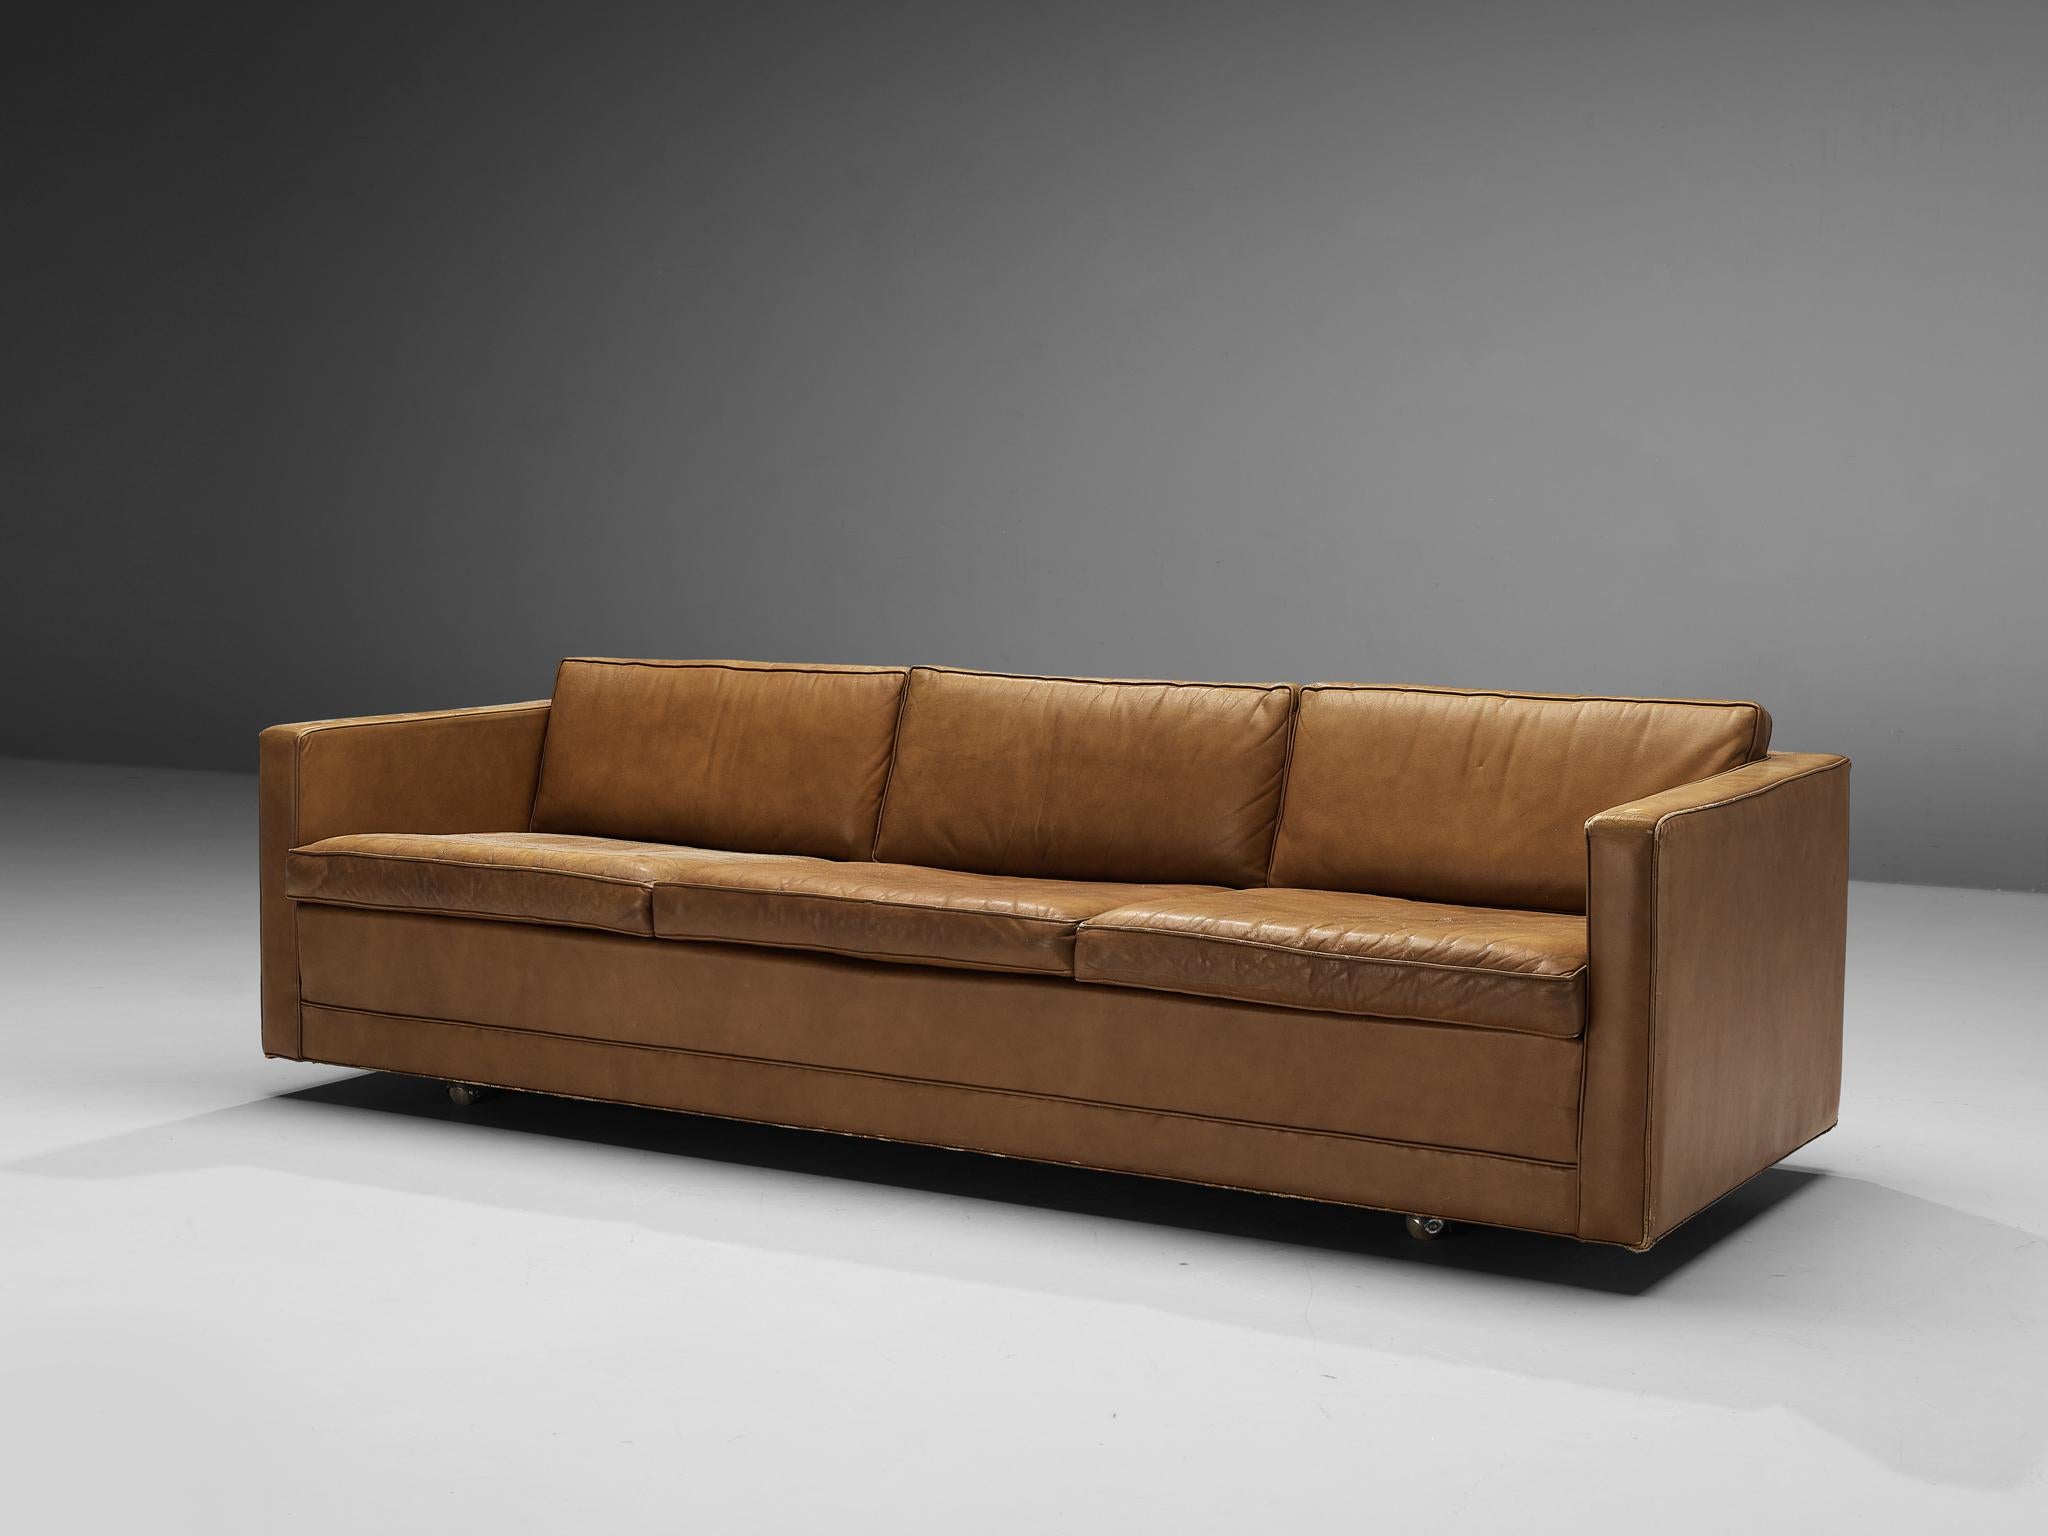 Artifort, canapé, cuir, métal, Pays-Bas, années 1970

Ce canapé cubique présente des lignes claires qui lui confèrent un aspect audacieux. Le dossier et les accoudoirs sont à la même hauteur. Le revêtement en cuir brun patiné complète le design